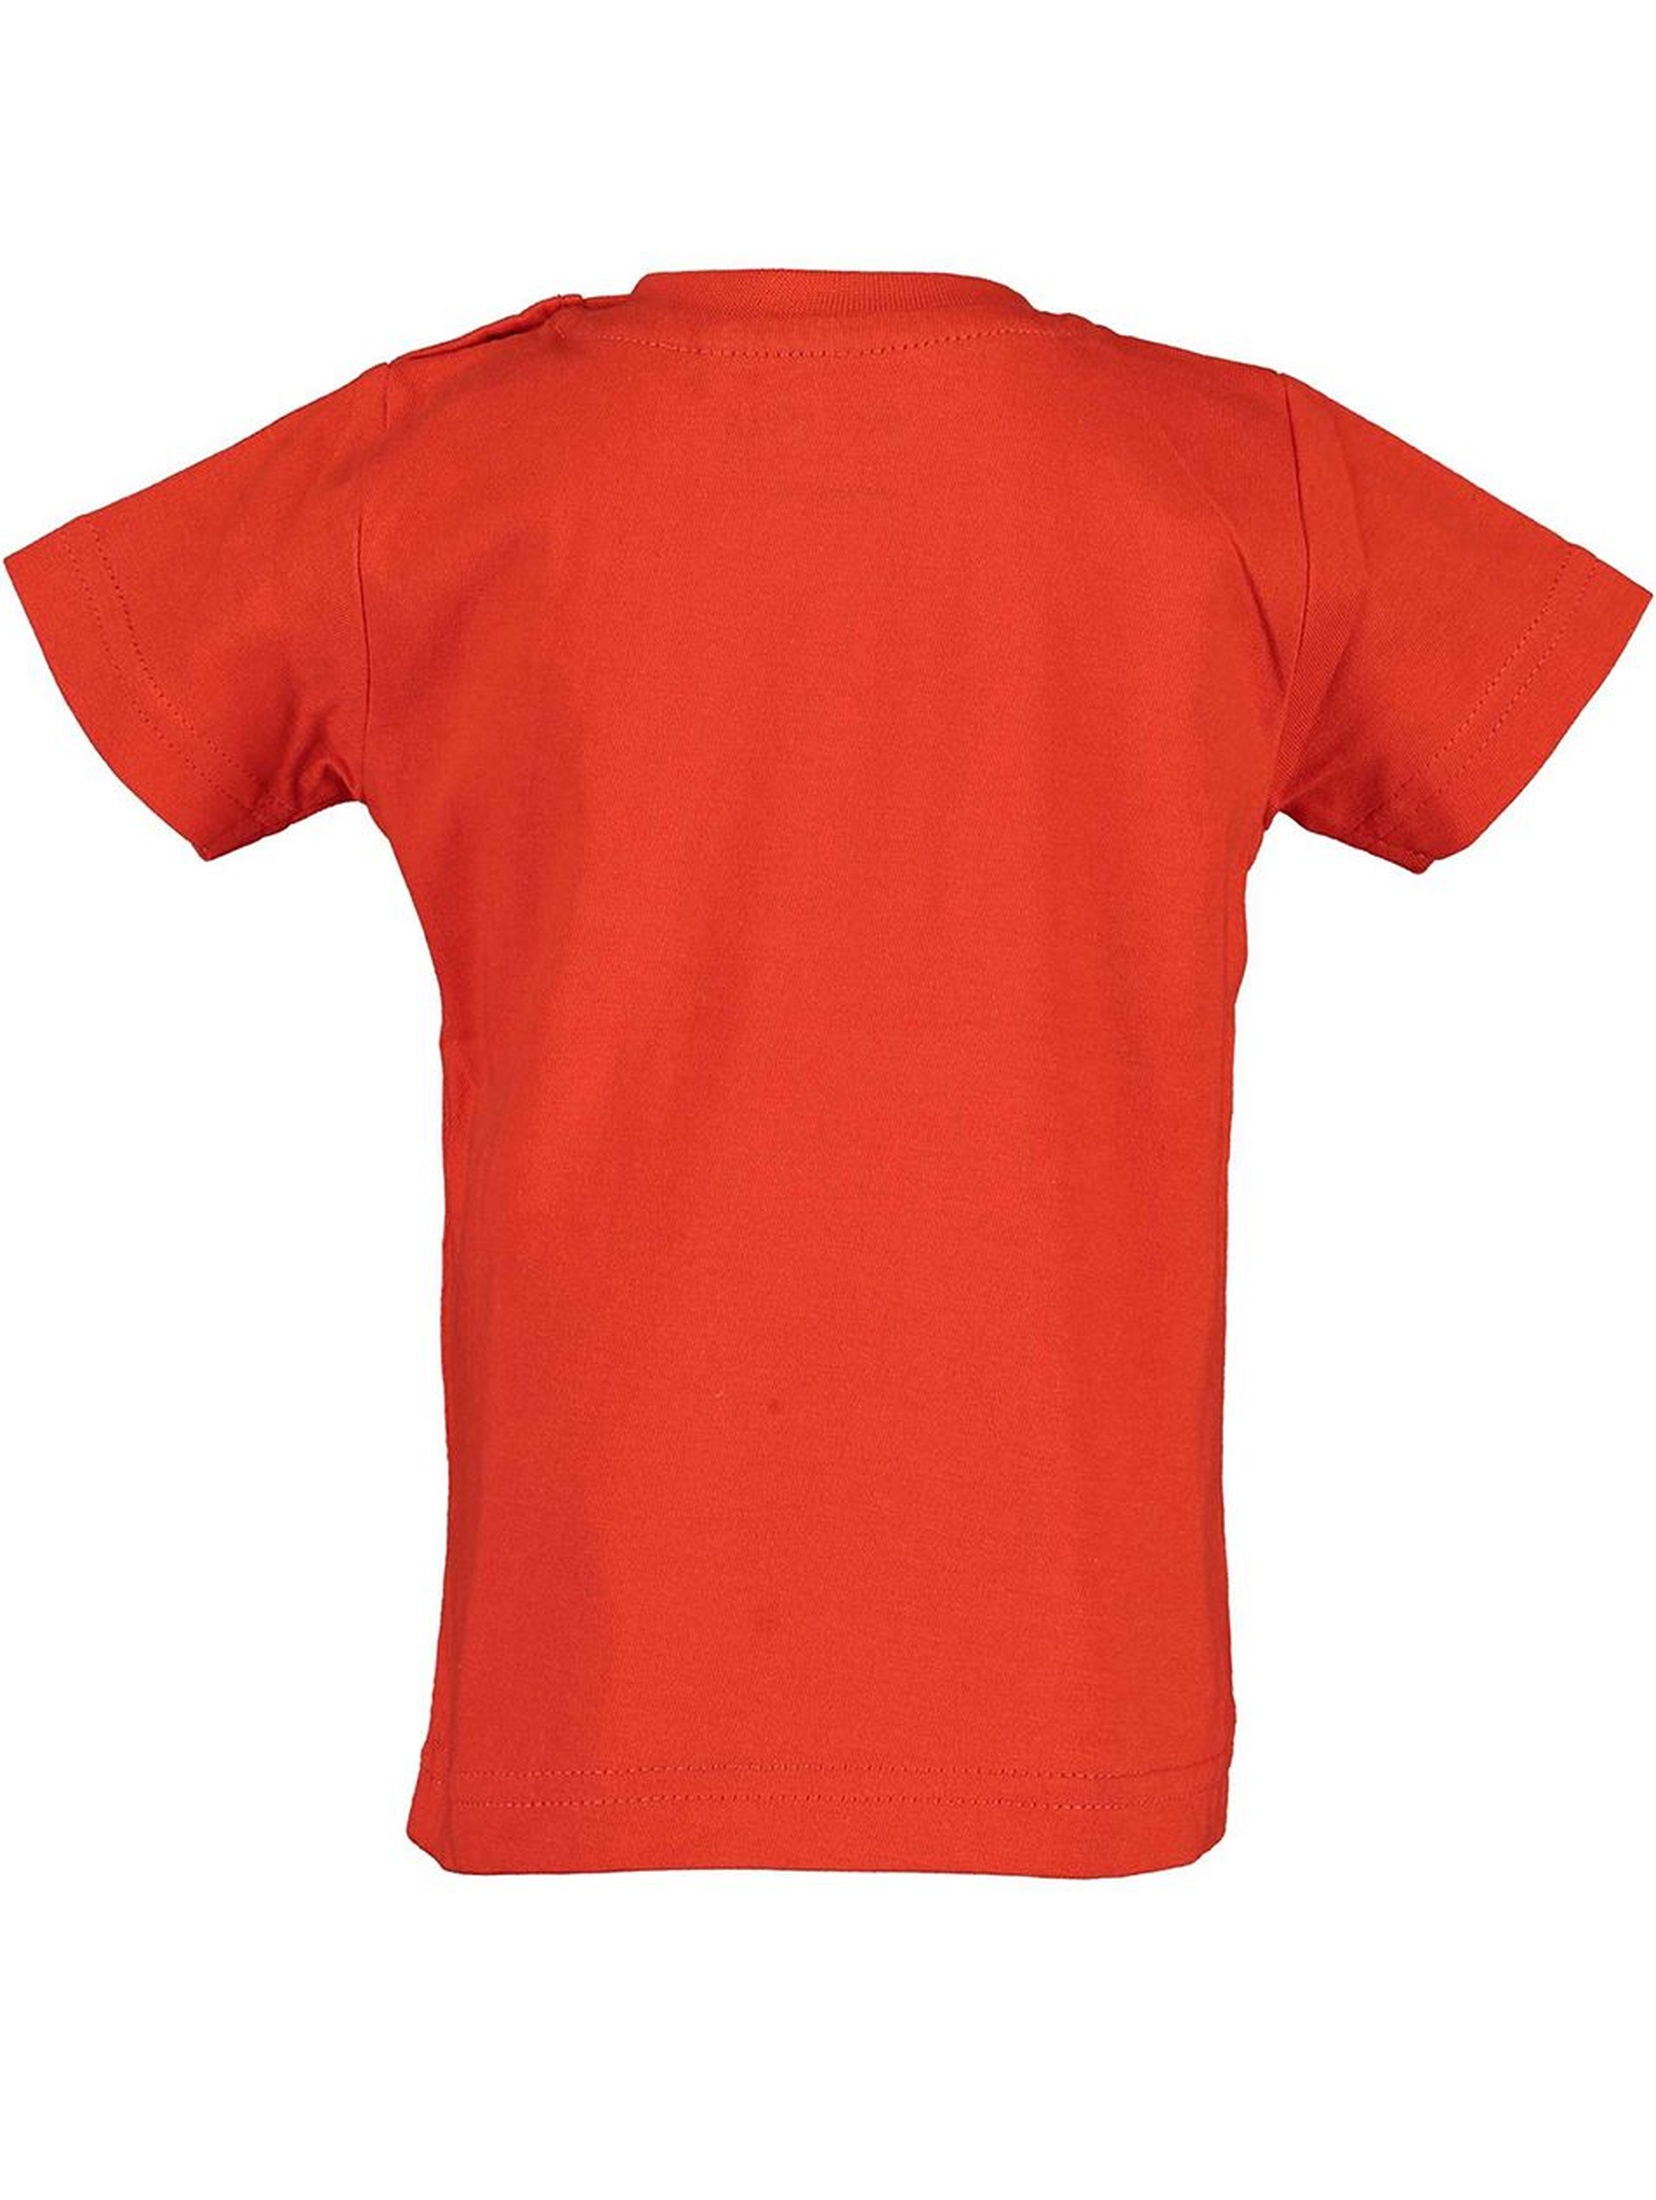 Koszulka chłopięca czerwona z koparką